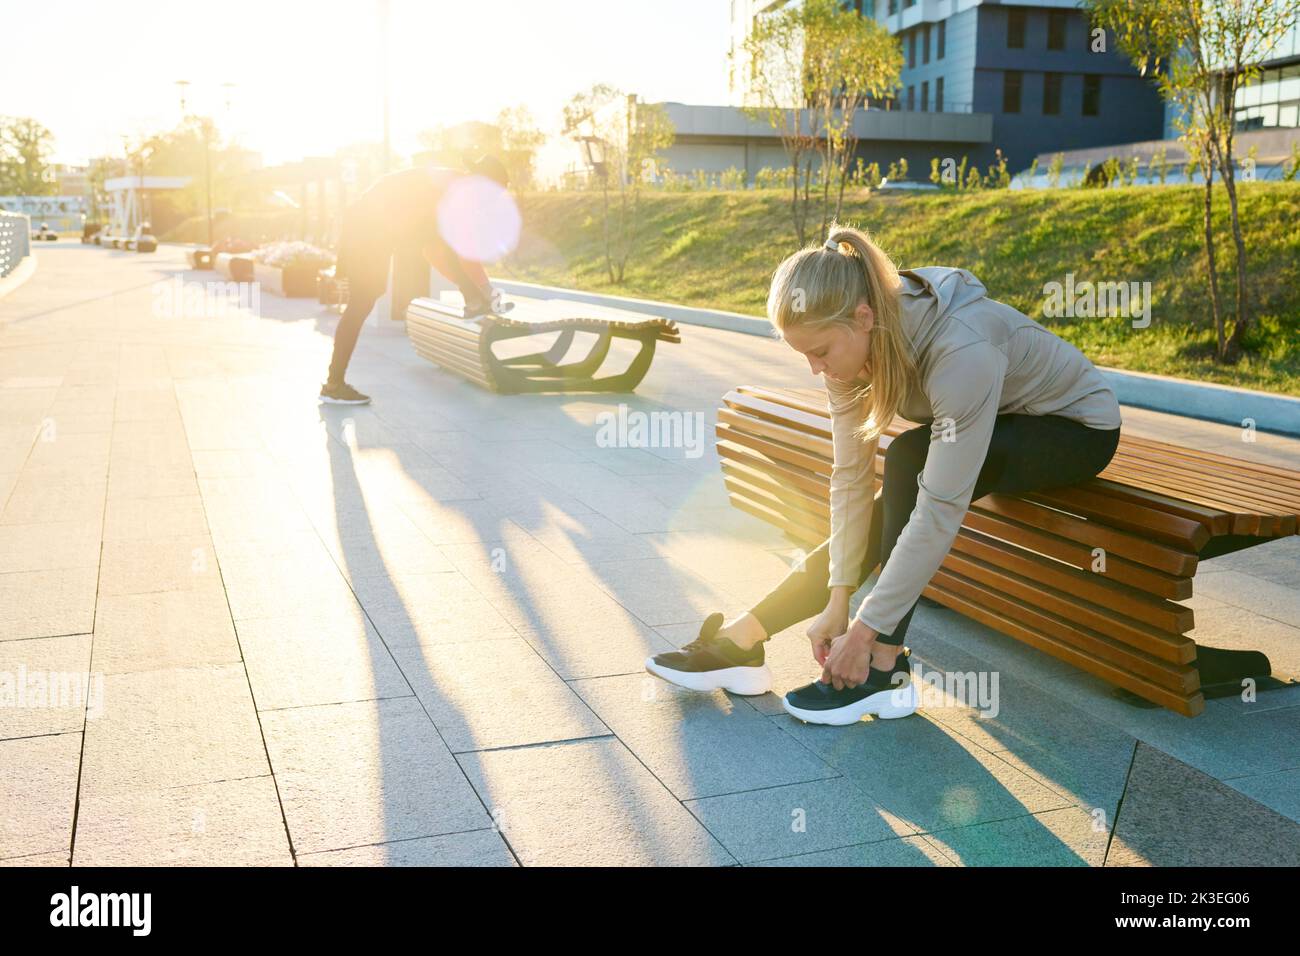 Jeune blonde sportswoman en vêtements d'activité assis sur le banc dans un environnement urbain et se pliant sur la sneaker tout en nouant le cordonnet Banque D'Images